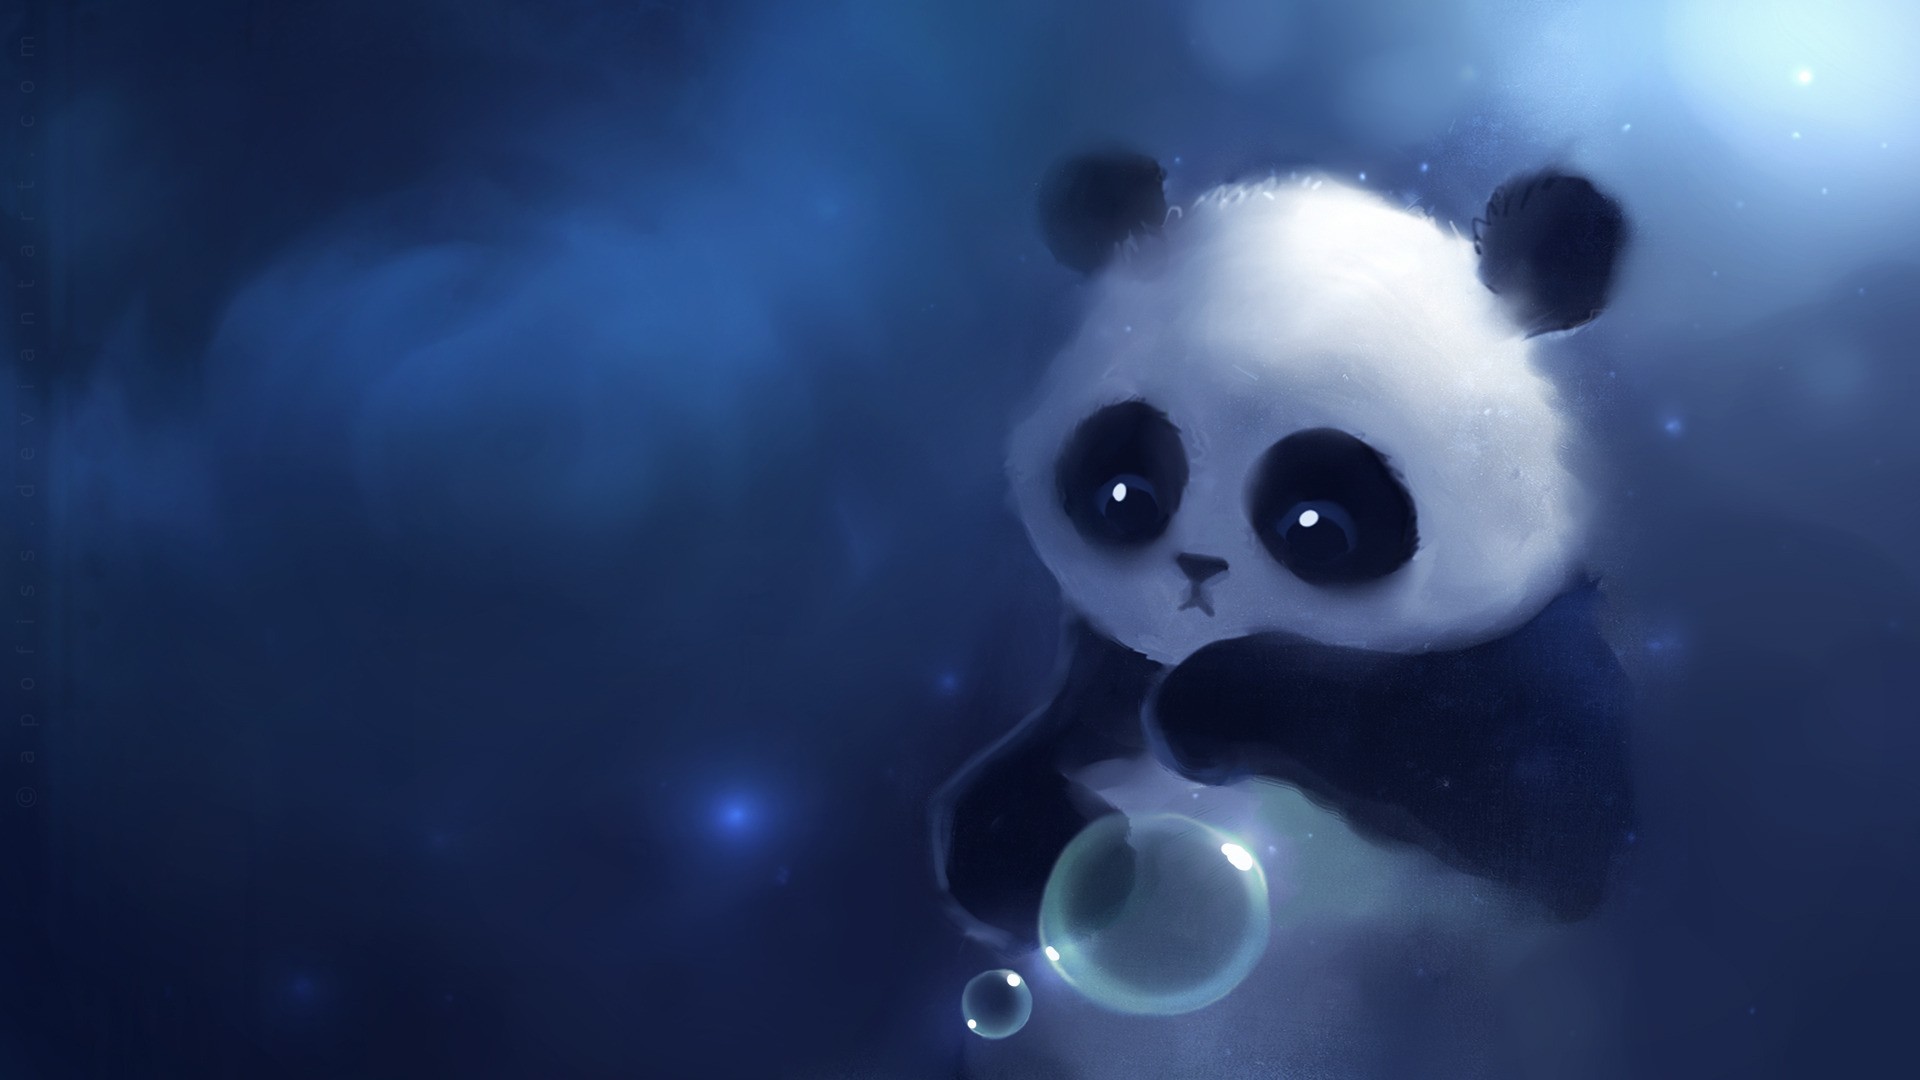 cute baby panda wallpaper hd